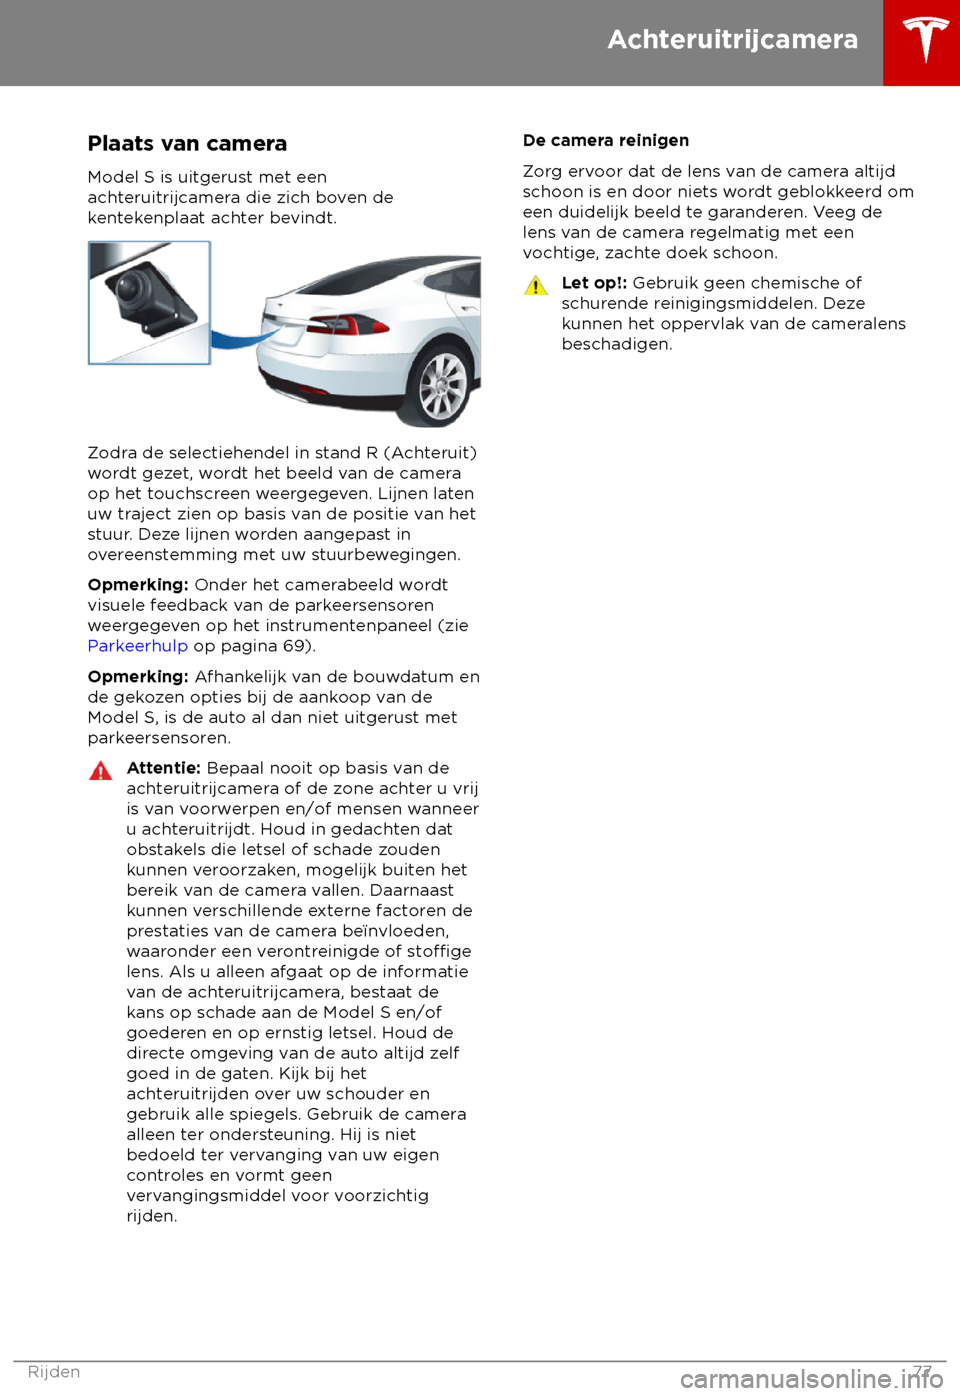 TESLA MODEL S 2018  Handleiding (in Dutch) Plaats van camera
Model S is uit gerust met een
achteruitrijcamera die zich boven de
kentekenplaat achter bevindt. Zodra de selectiehendel in stand R (Achteruit)
w

ordt gezet, wordt het beeld van de 